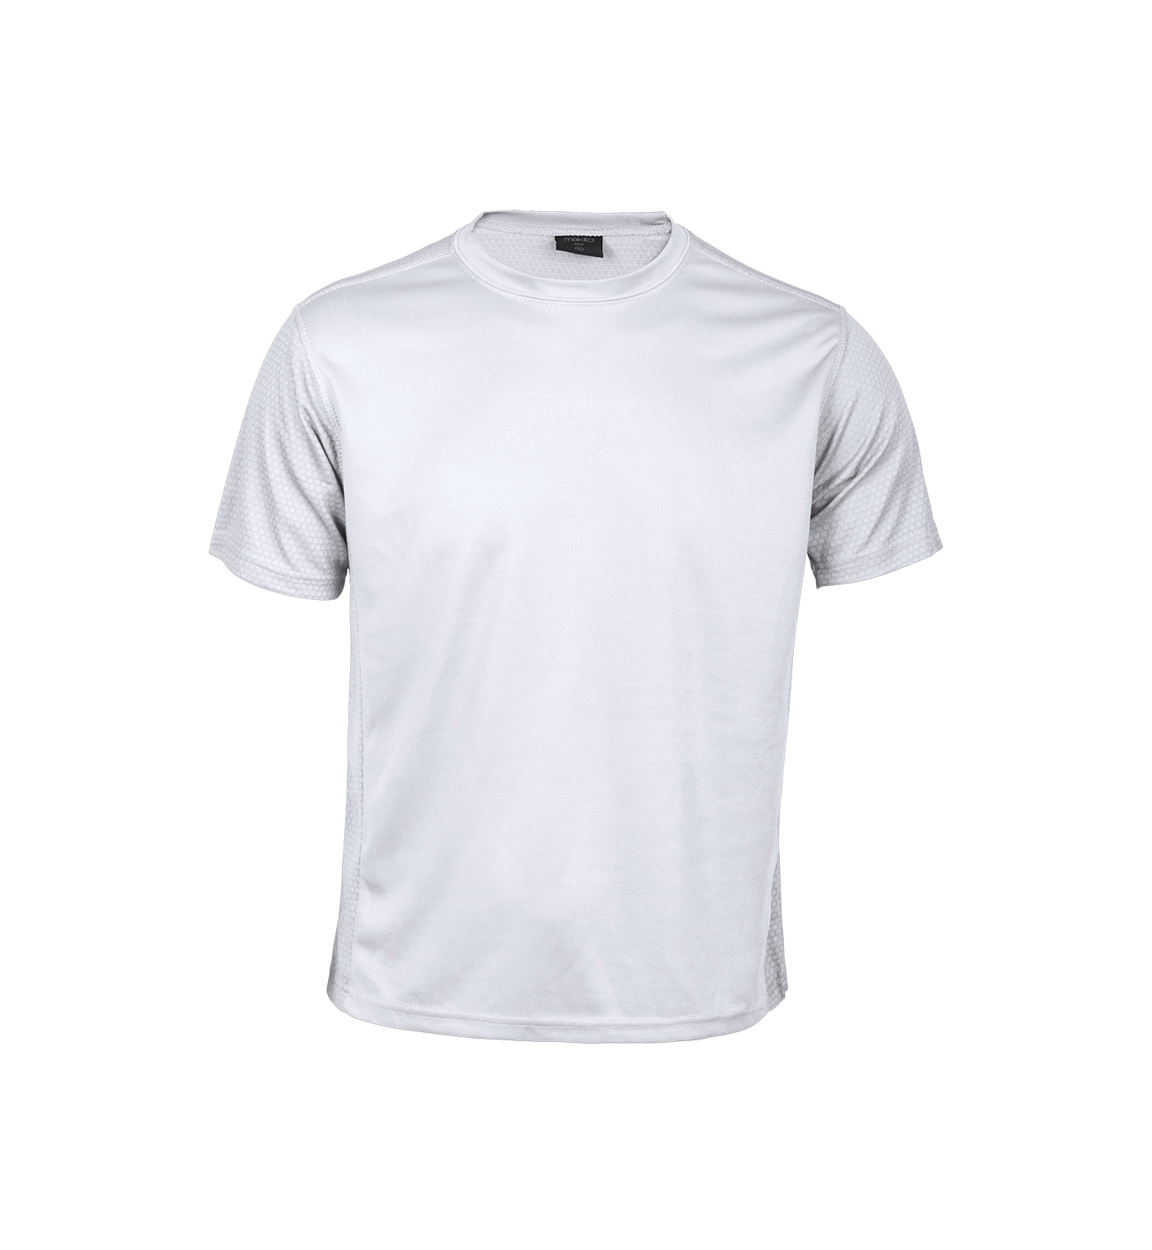 Tecnic Rox. T-shirt sportiva - AP781303